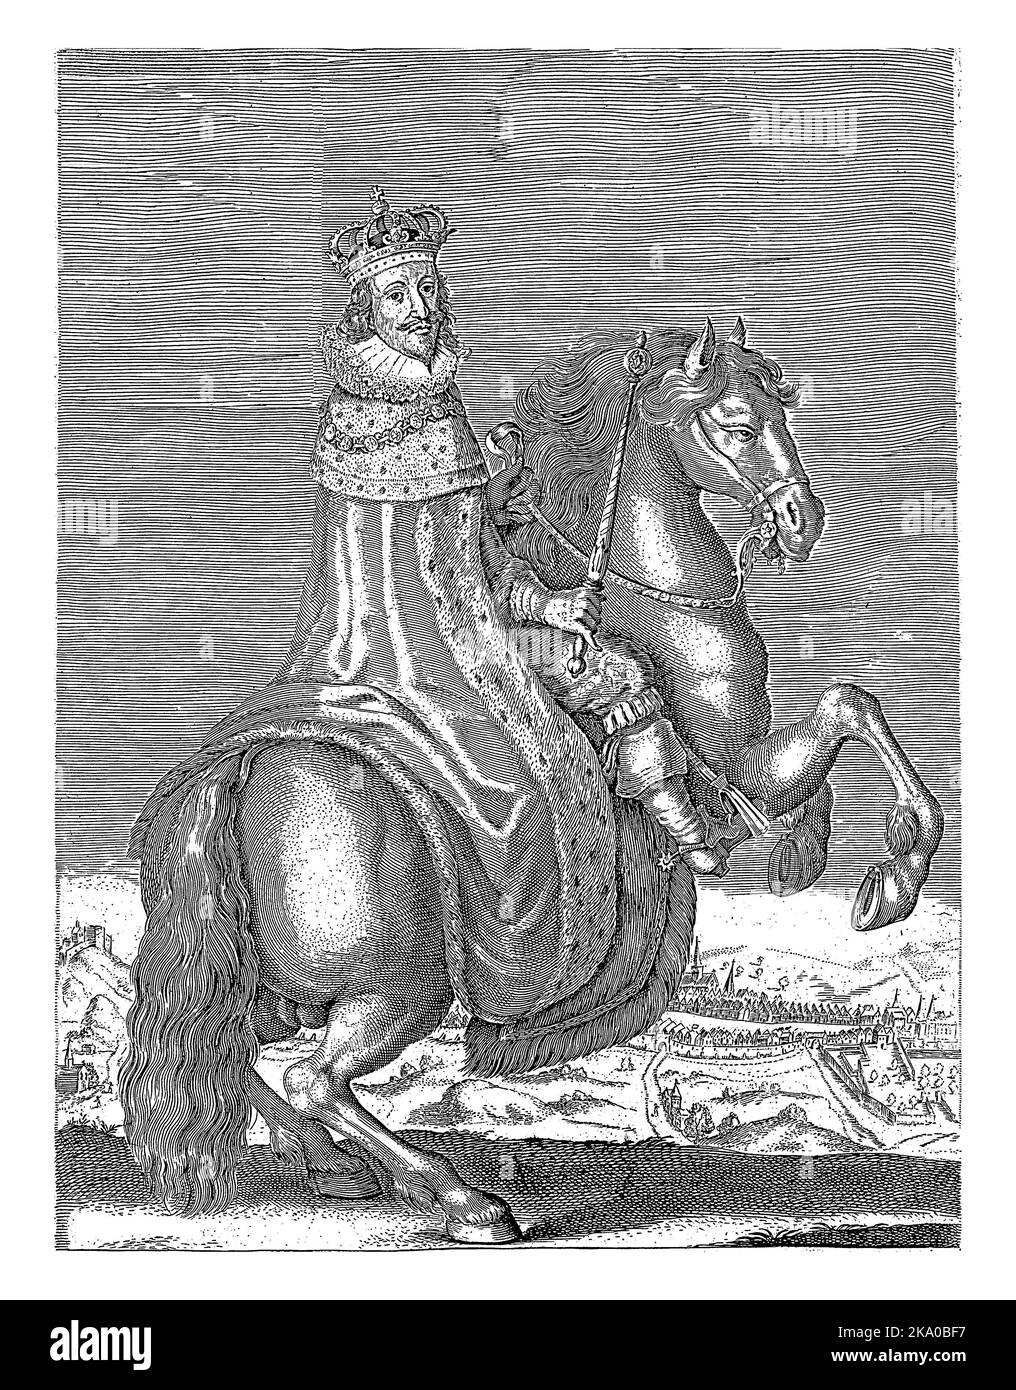 Ritratto equestre di Carlo i, re d'Inghilterra, vestito di mantello reale, con corona sulla testa e scettro in mano. Sullo sfondo è la t Foto Stock